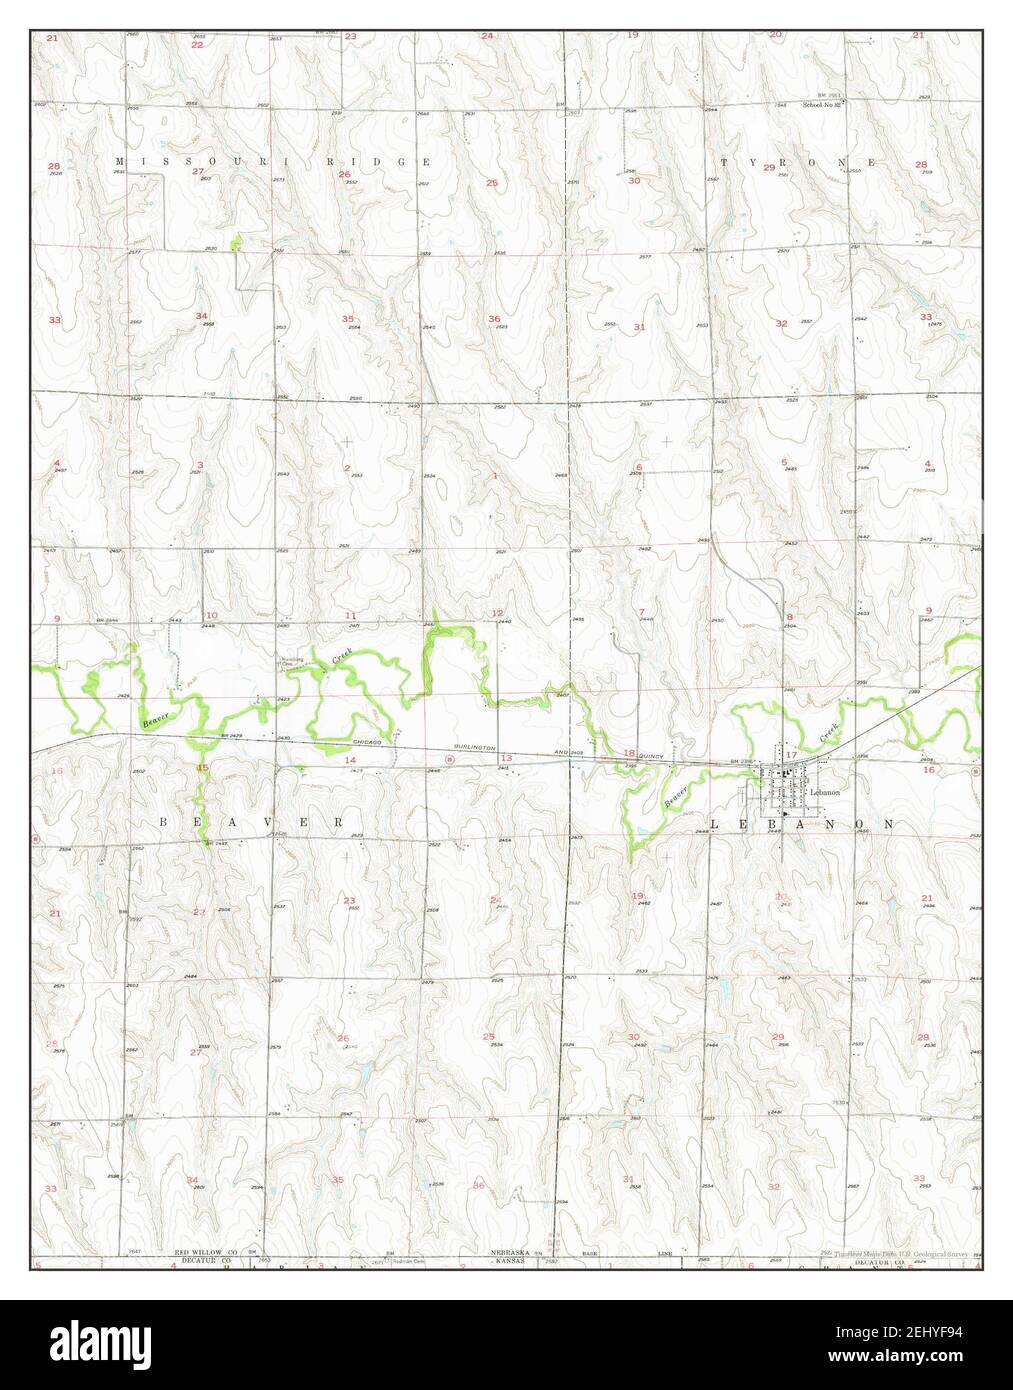 Liban, Nebraska, carte 1957, 1:24000, États-Unis d'Amérique par Timeless Maps, données U.S. Geological Survey Banque D'Images